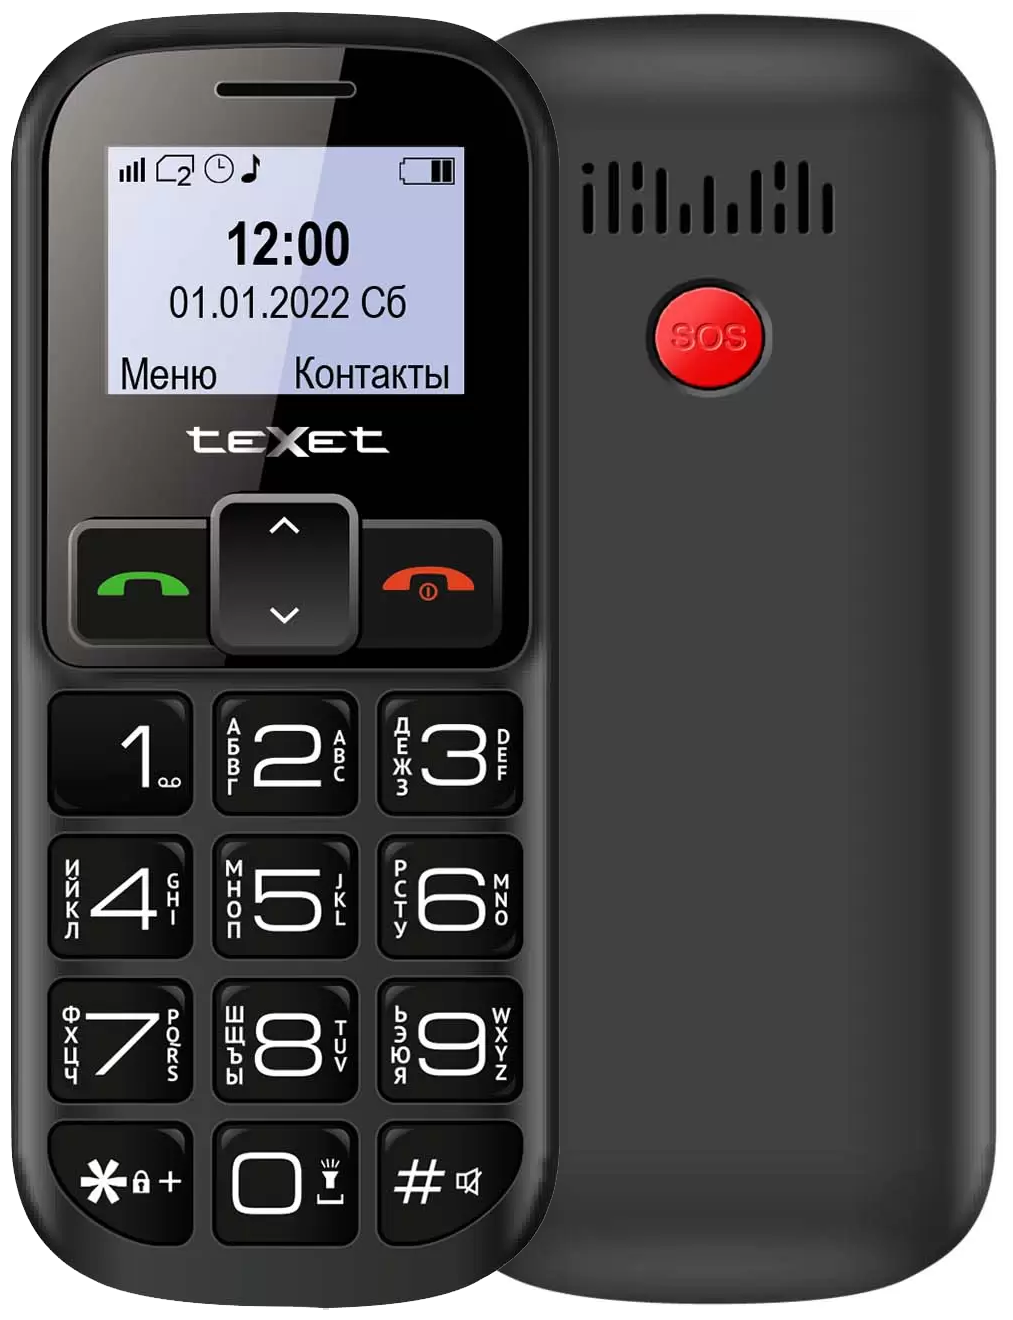 Мобильный телефон teXet TM-B322, 1.44" 128x64 монохромный, 2-Sim, 600 мА·ч, micro-USB, черный/красный отказ от покупки, небольшие следы эксплуатации (открывание крышки), полный комплект